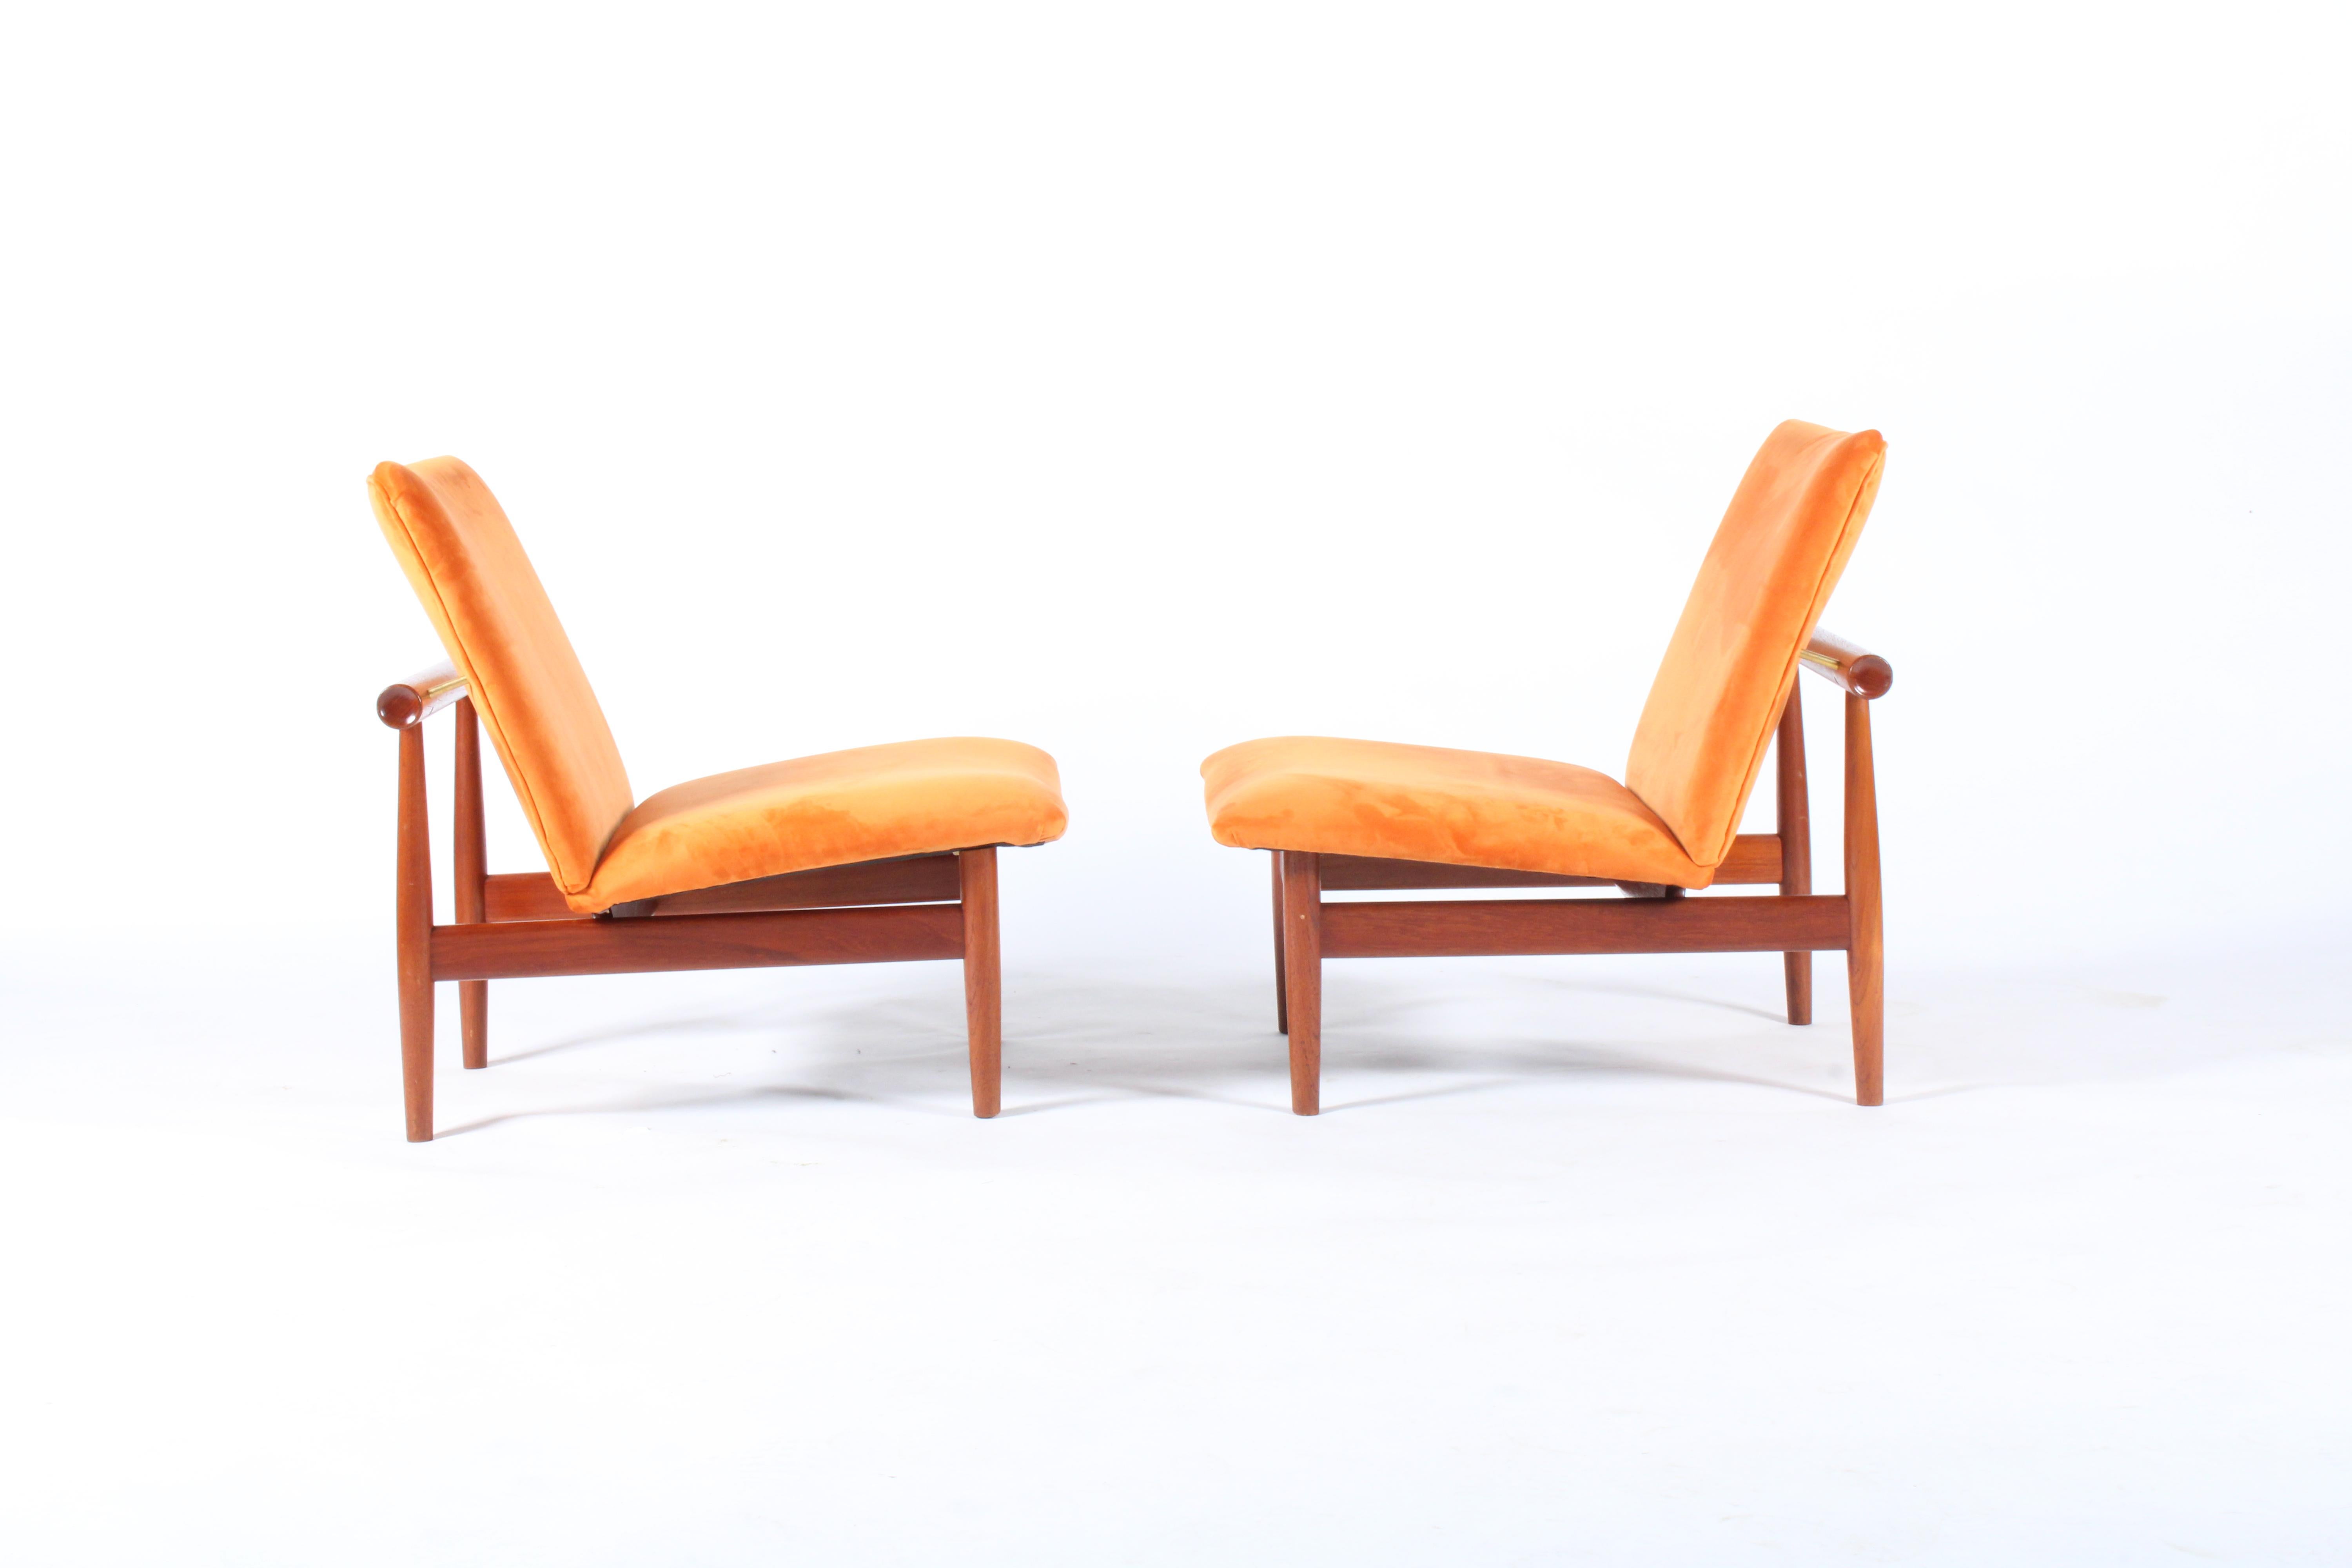 Pair of Iconic Danish Design Japan Chairs by Finn Juhl for France & Daverkosen 6